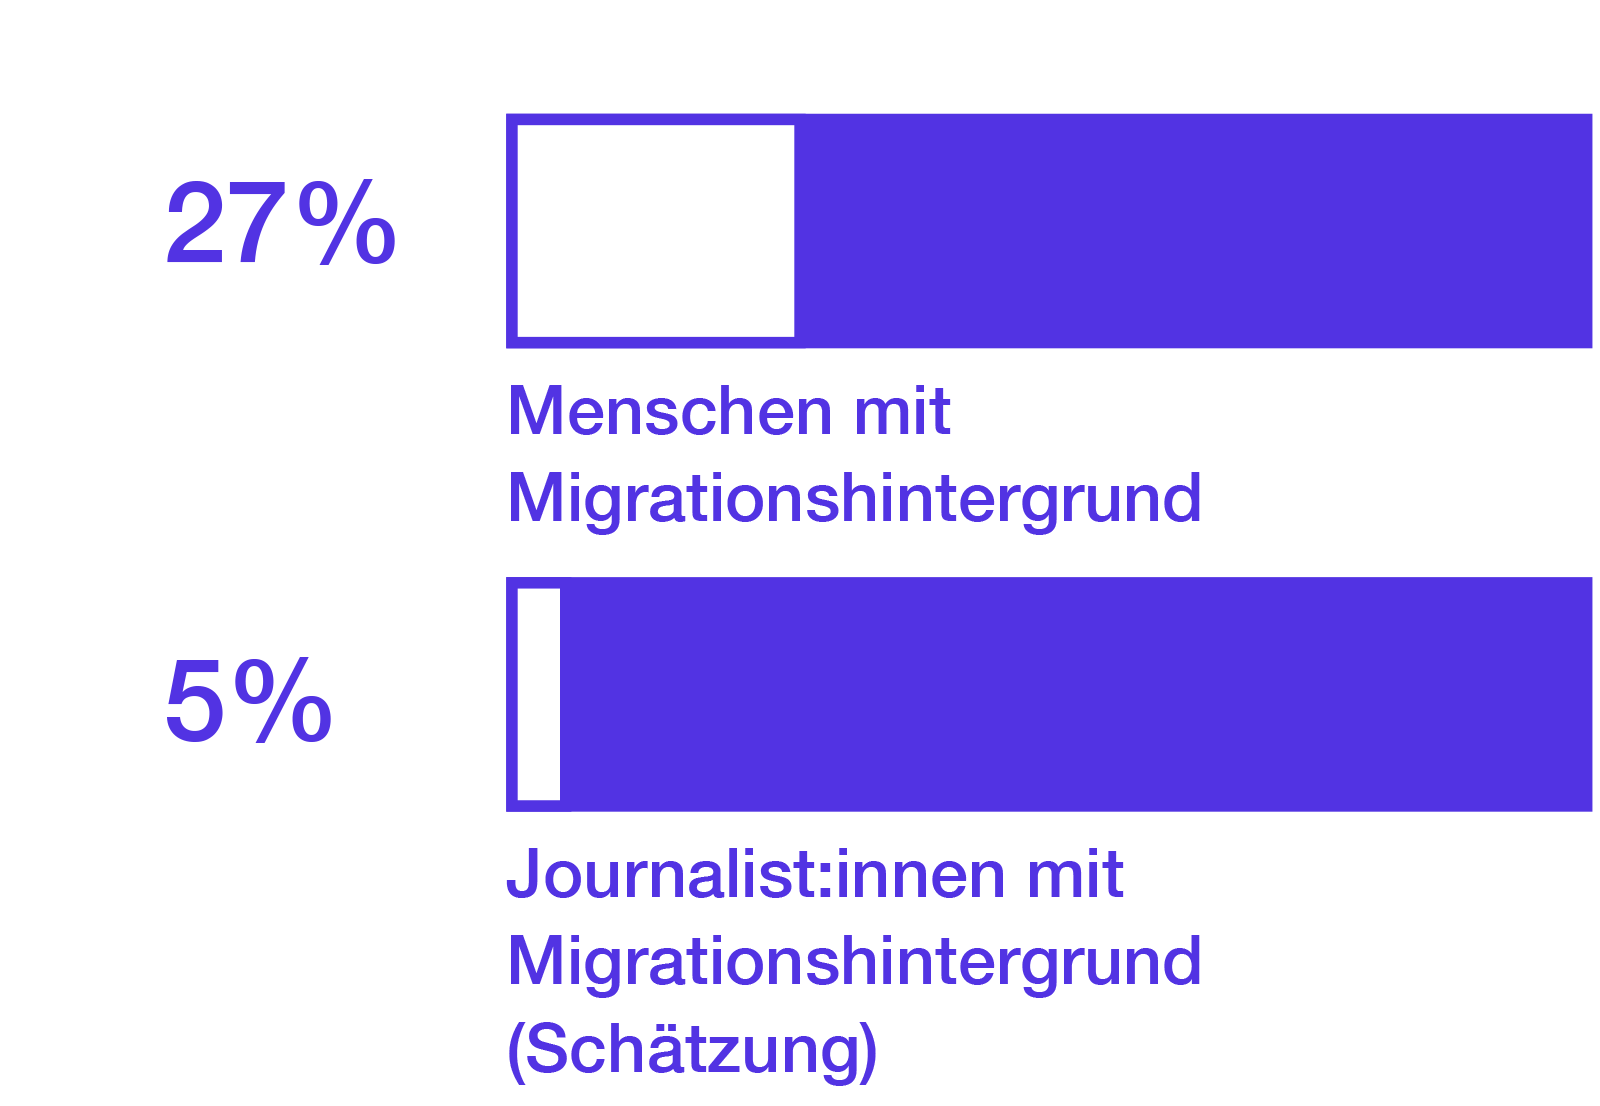 27% der Menschen in Deutschland haben einen Migrationshintergrund. Nach Schätzungen haben 5% der Journalist*innen einen Migrationshintergrund.